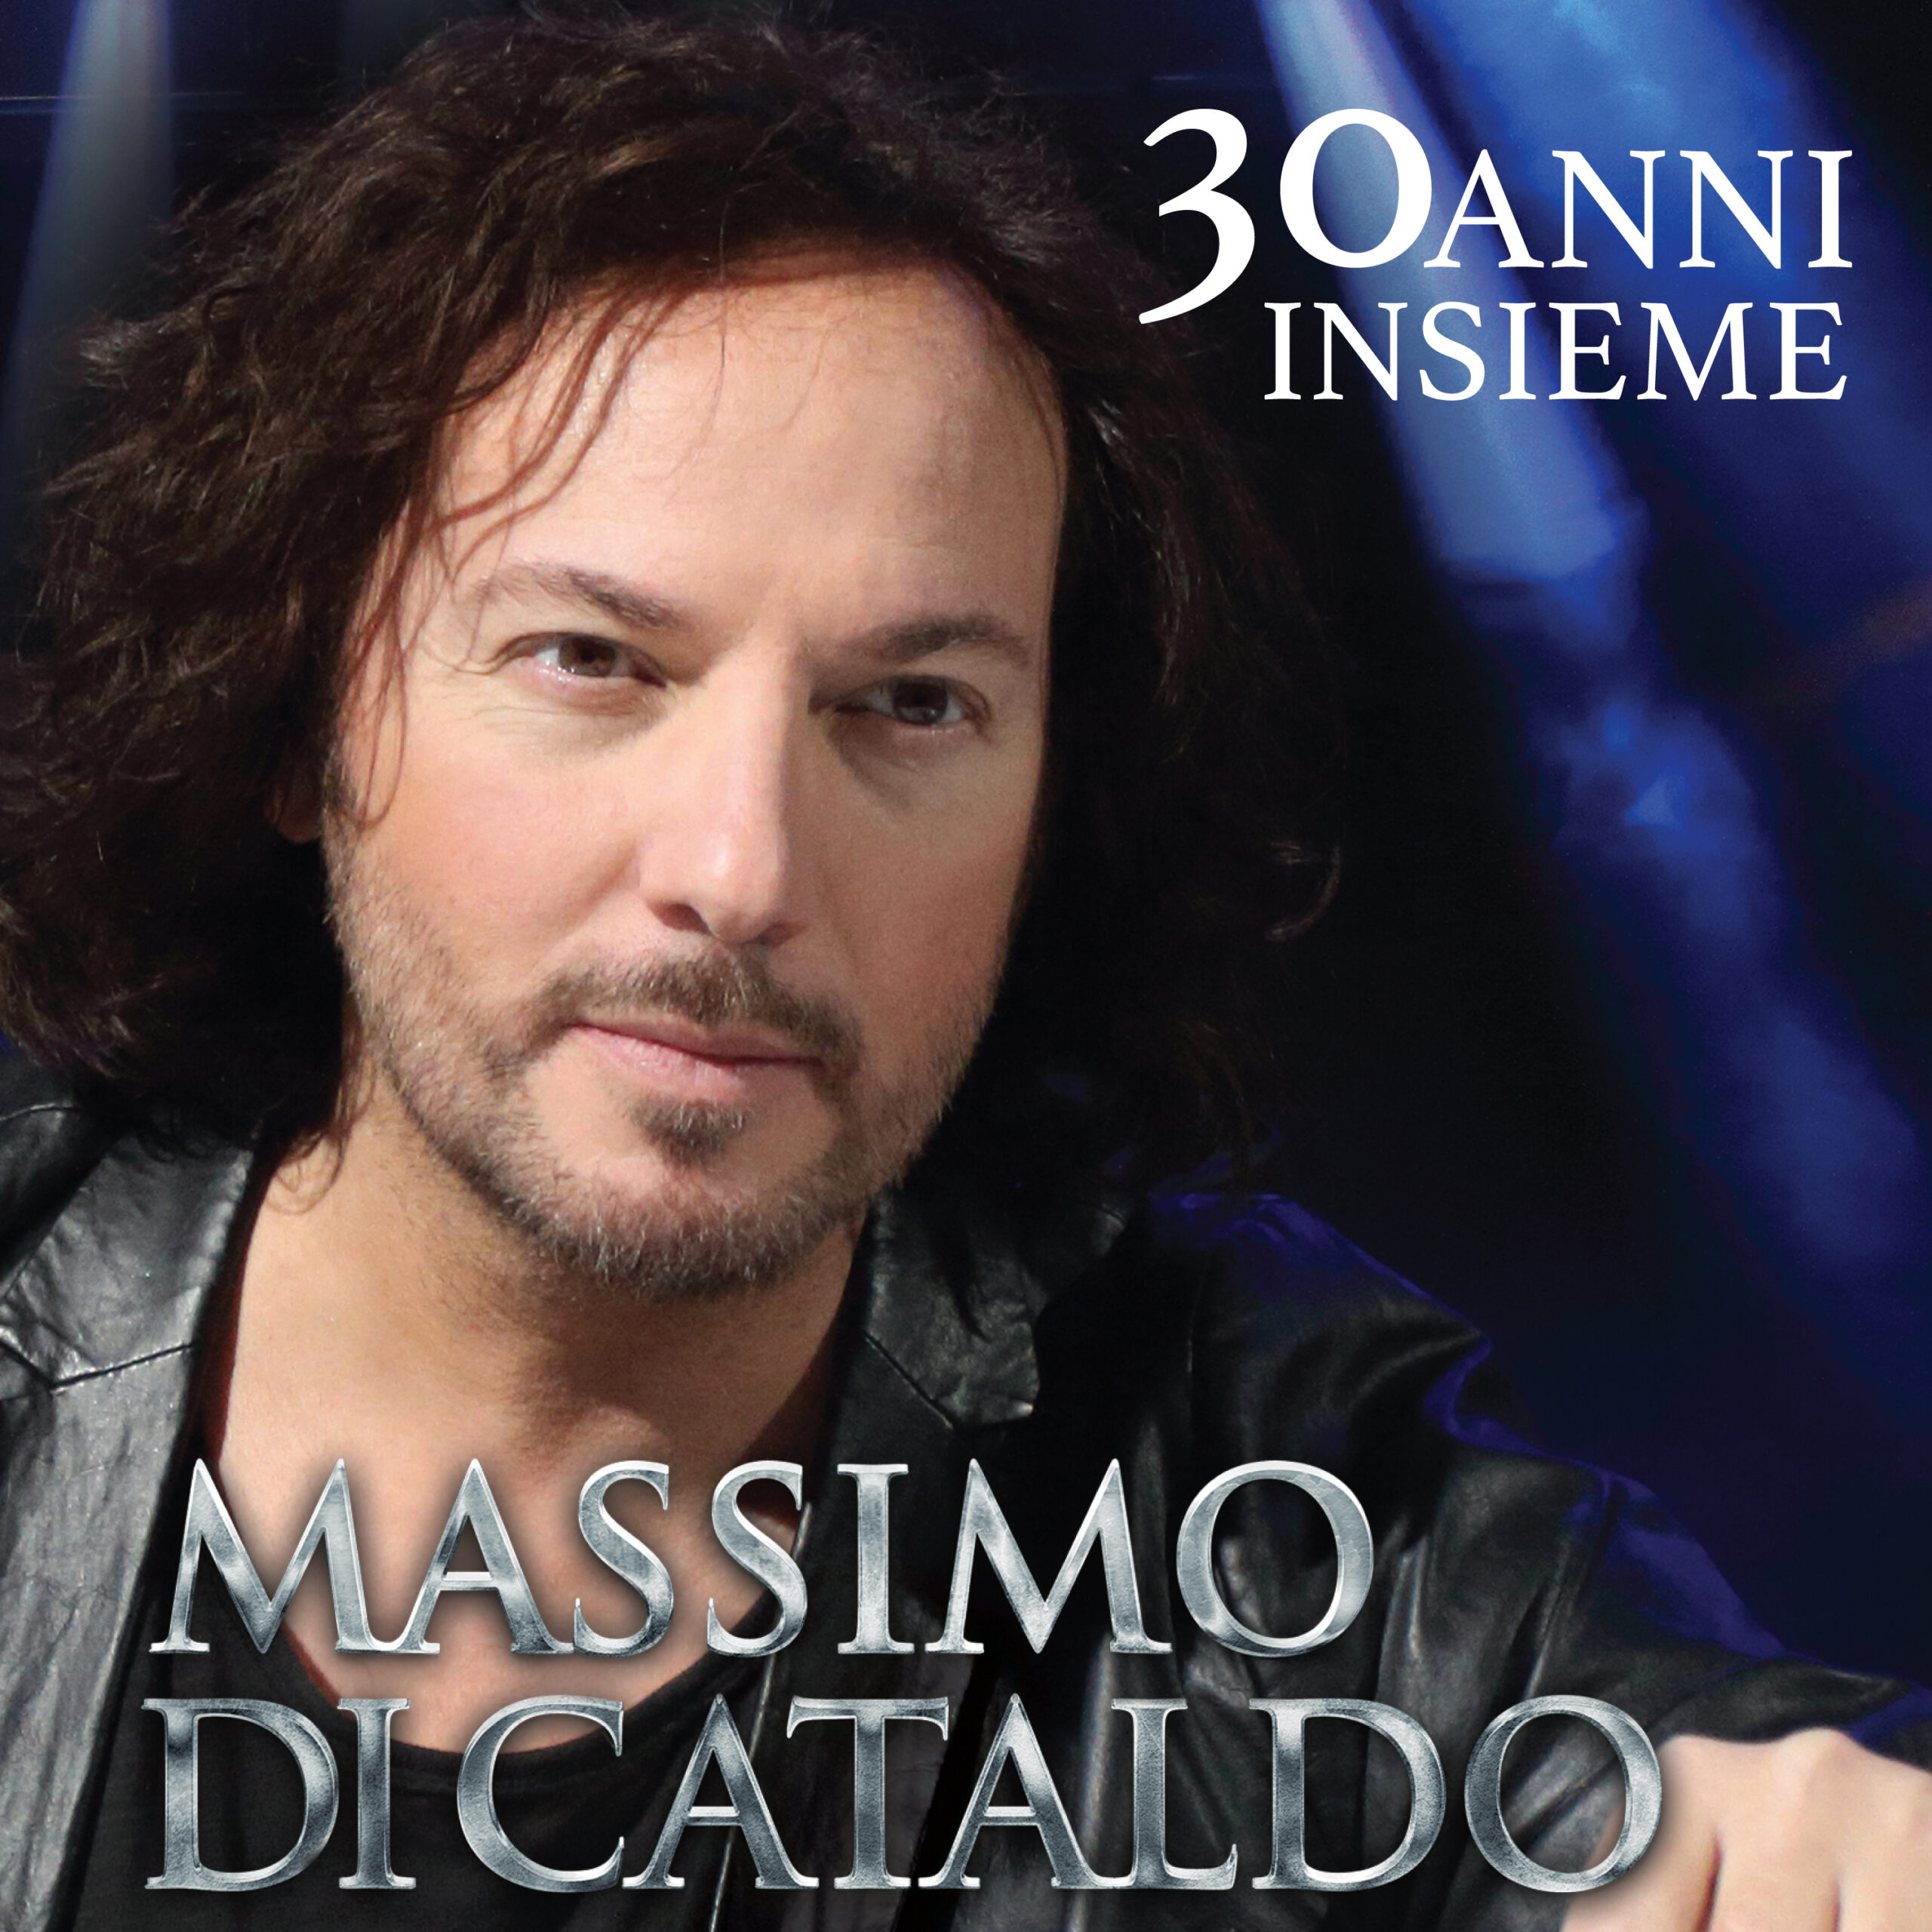 MASSIMO DI CATALDO il nuovo album “30 ANNI INSIEME”  disponibile in digitale dal 19 maggio